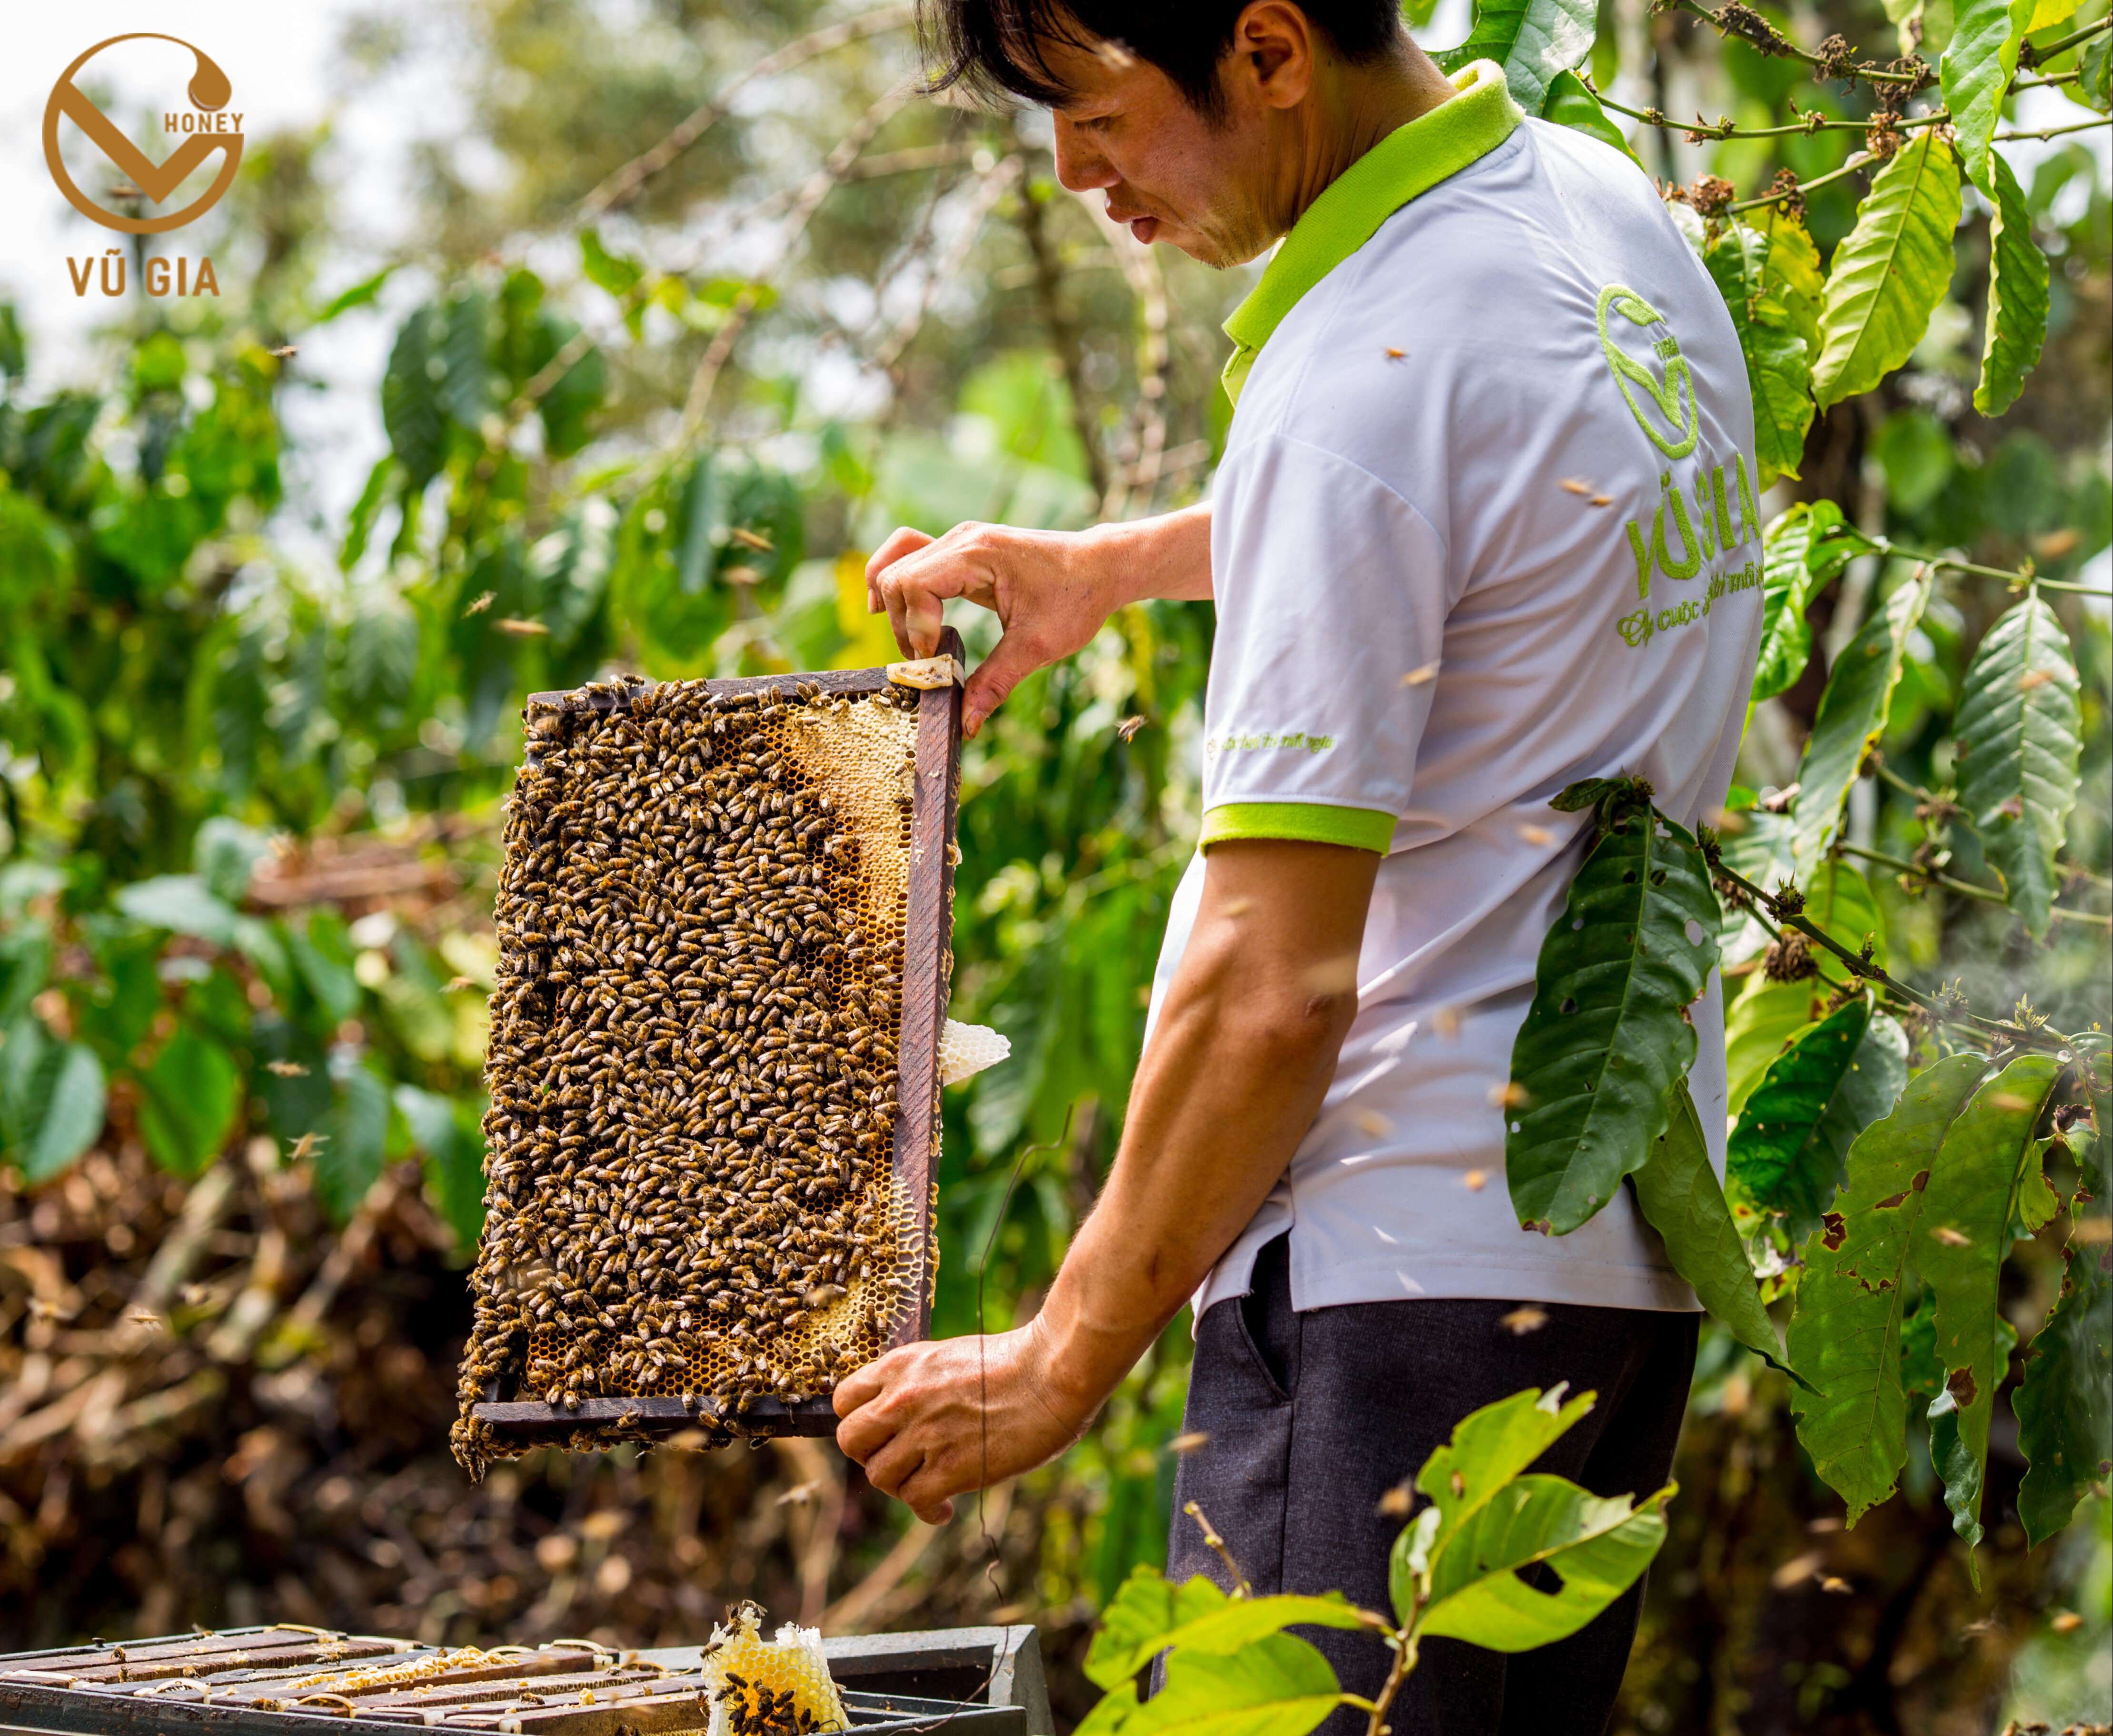 Mật Ong Hoa Nhãn Nguyên Chất VG Honey (200ml/hũ) - Tăng cường cải thiện sức đề kháng, hỗ trợ dạ dày tiêu hóa hiệu quả